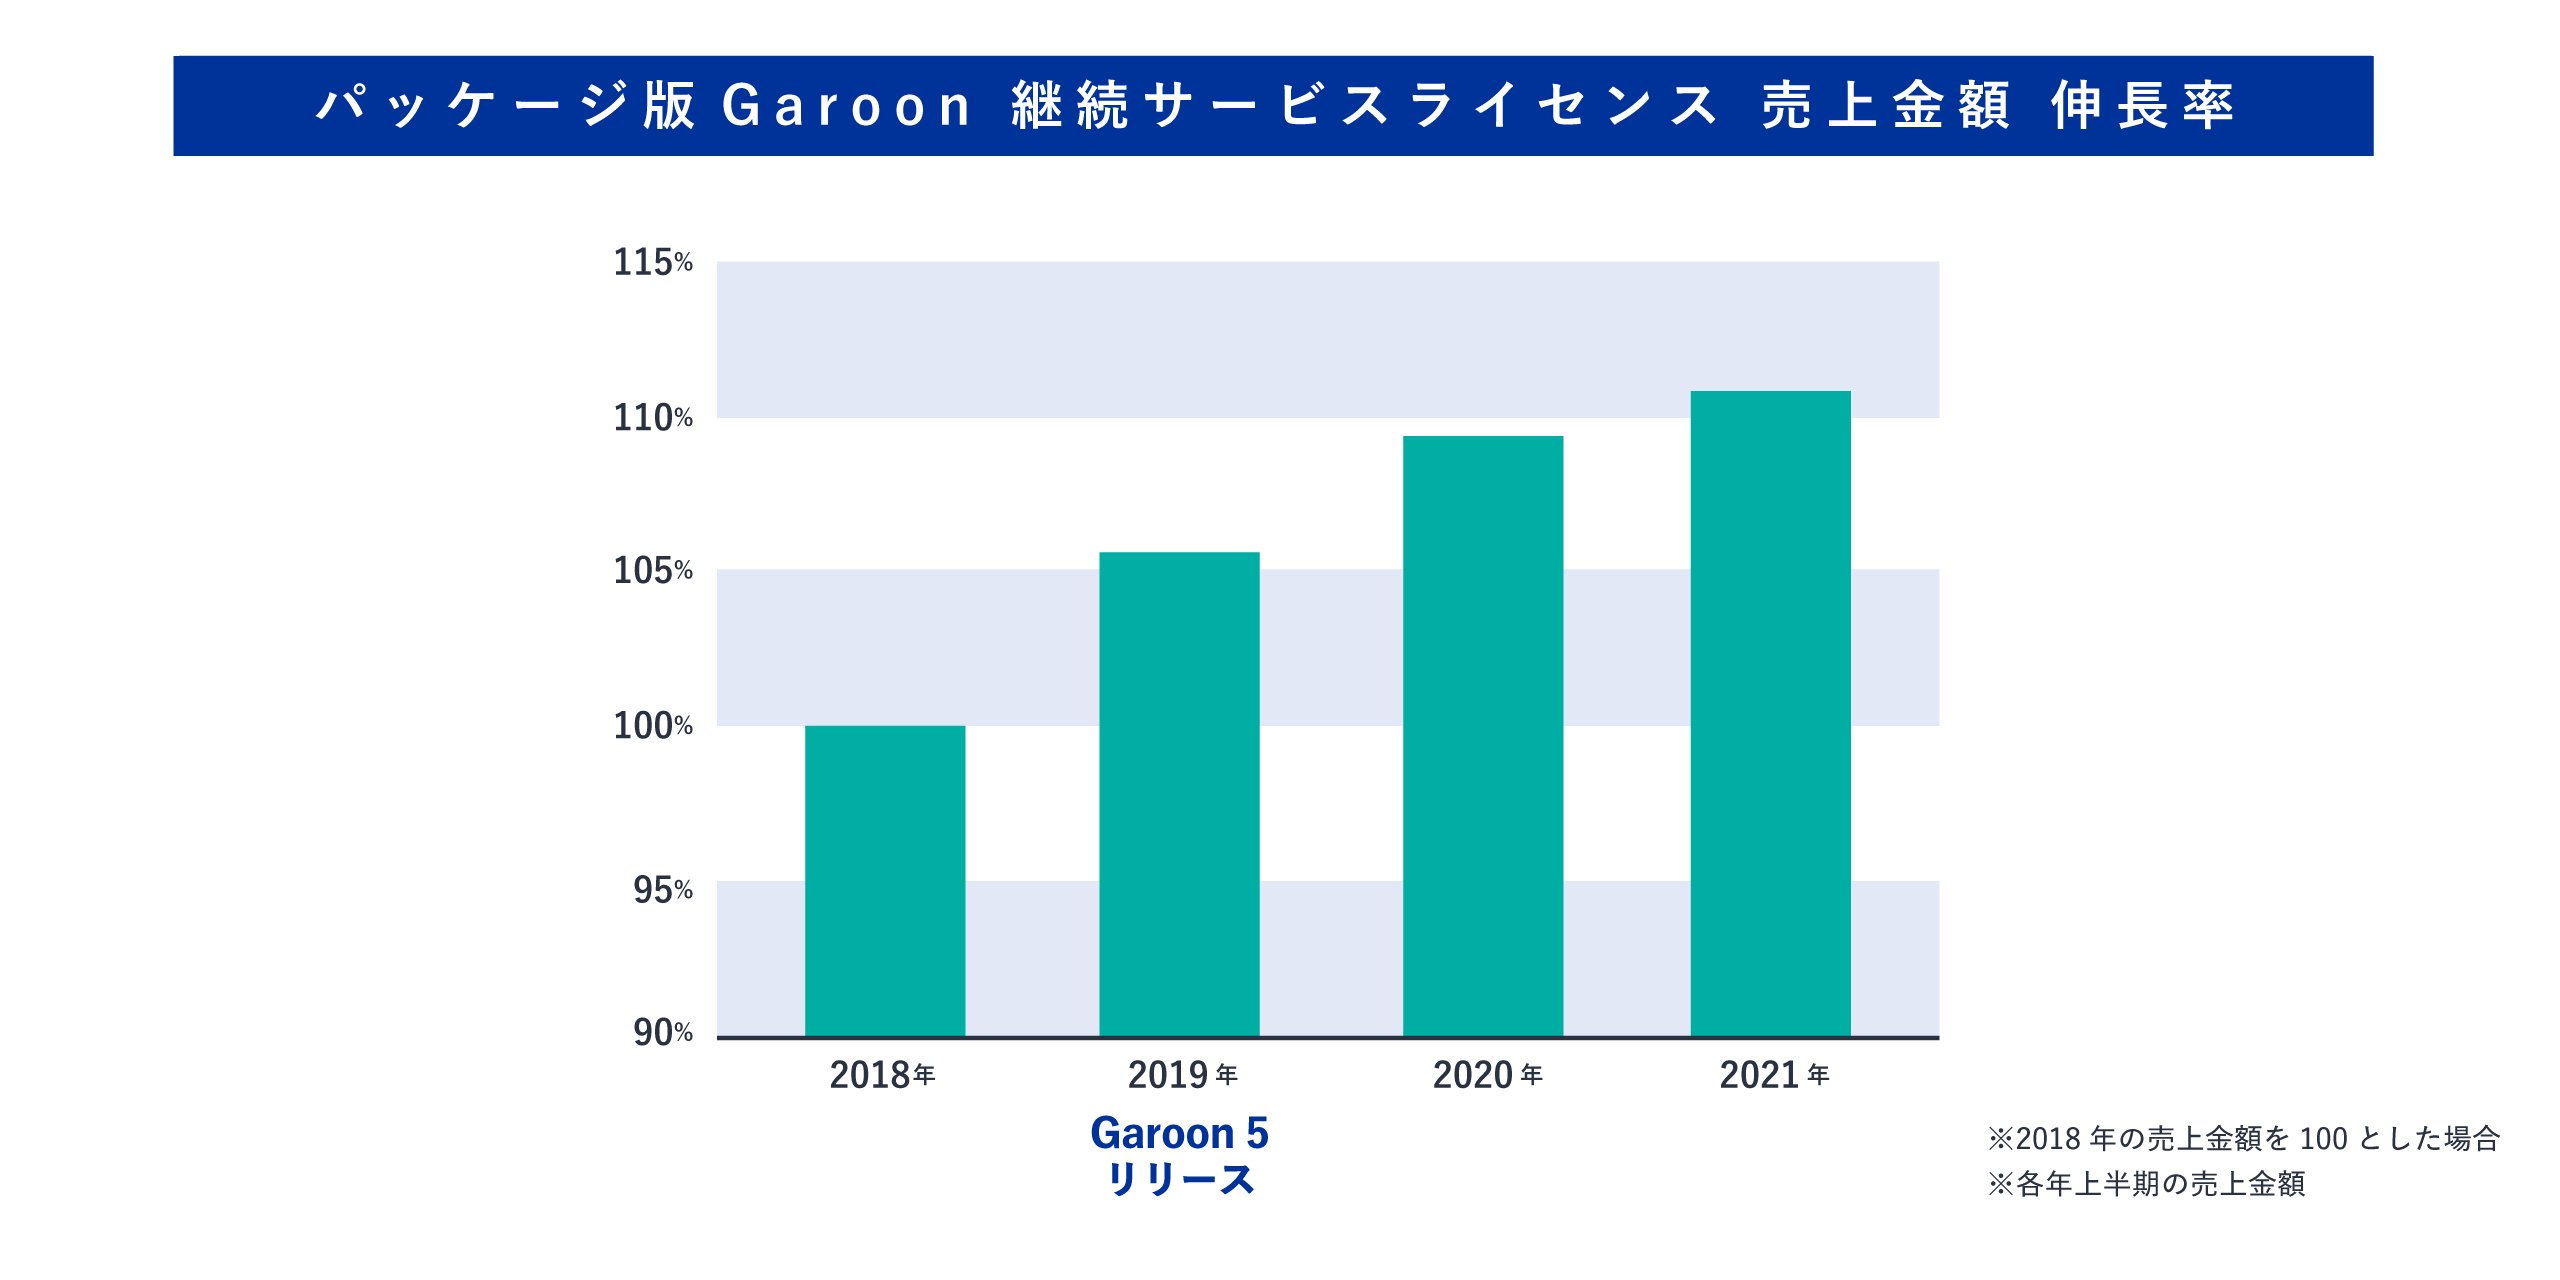 2018年から2021年のパッケージ版ガルーンの継続サービスライセンスの売上を示す棒グラフ